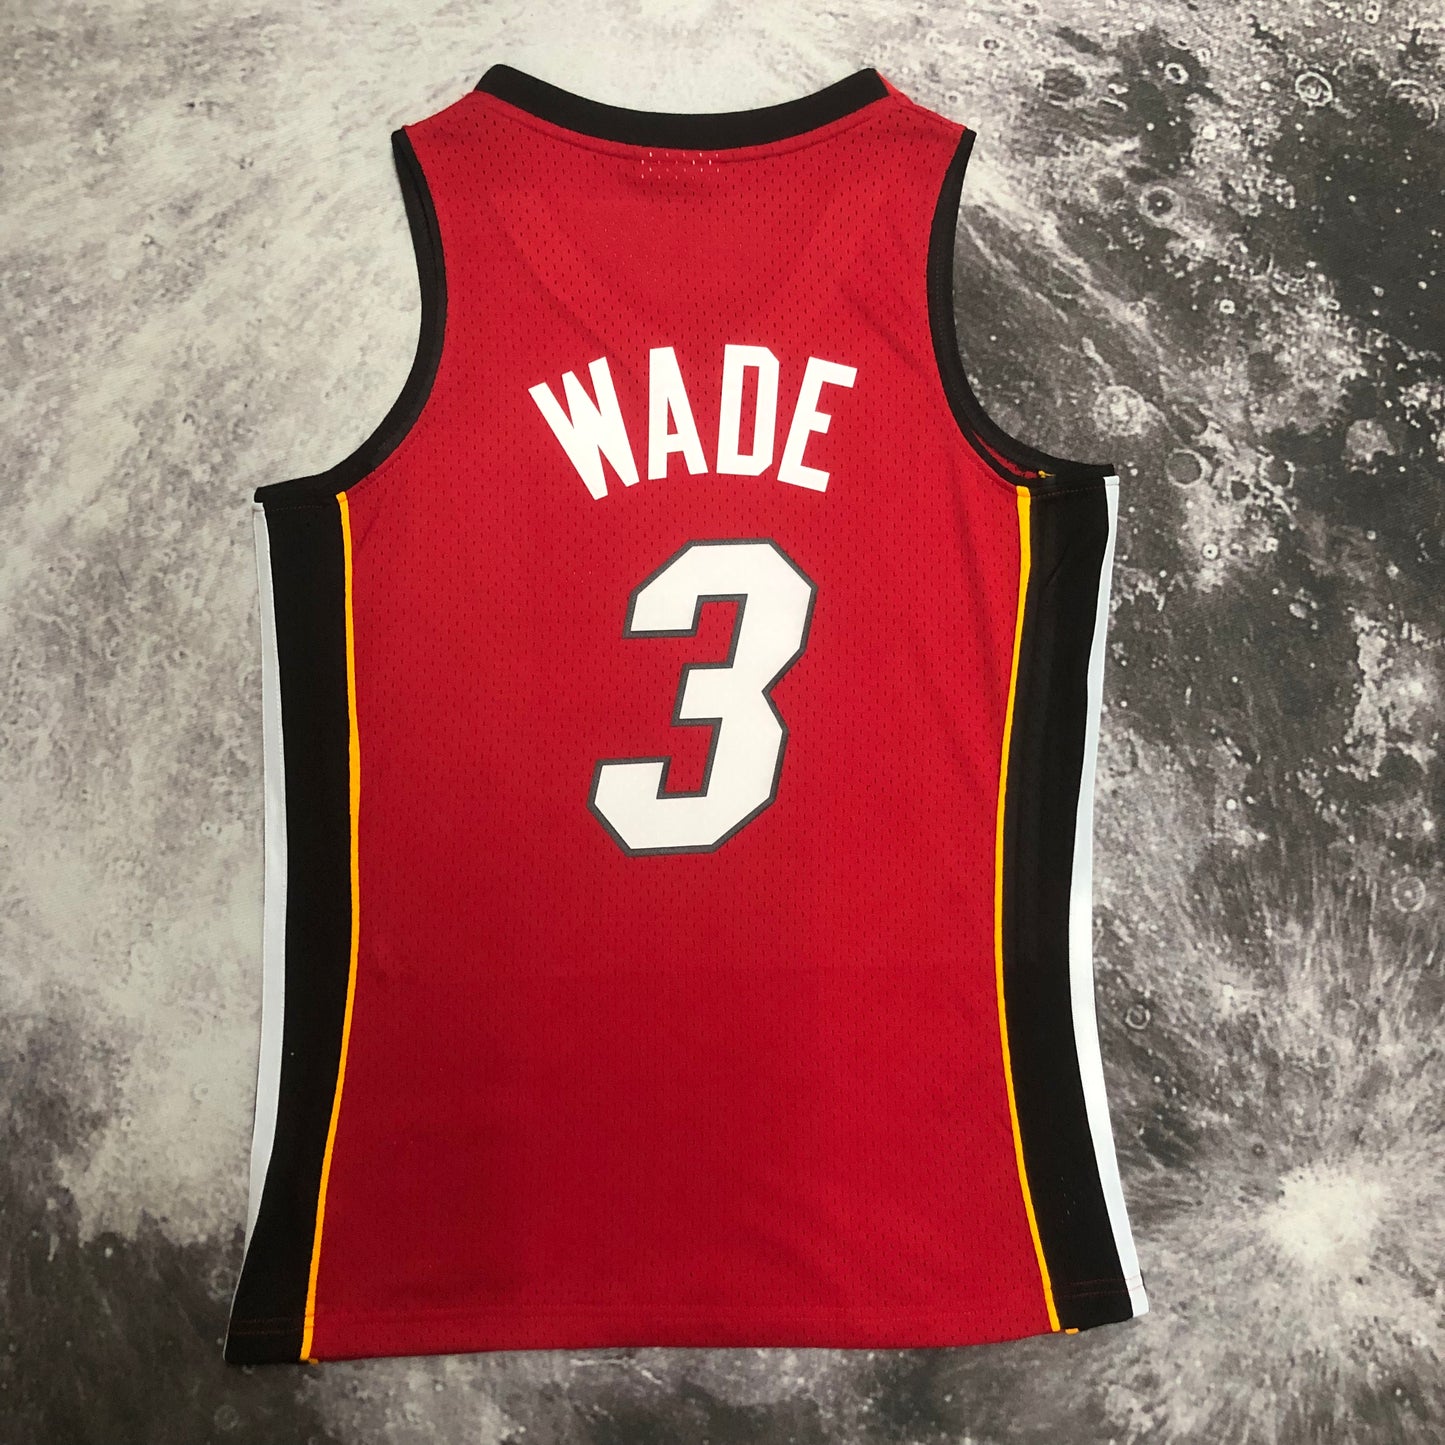 Dwayne Wade Mitchell & Ness 2005 Iconic Hardwood Classics NBA Swingman Jersey - Red